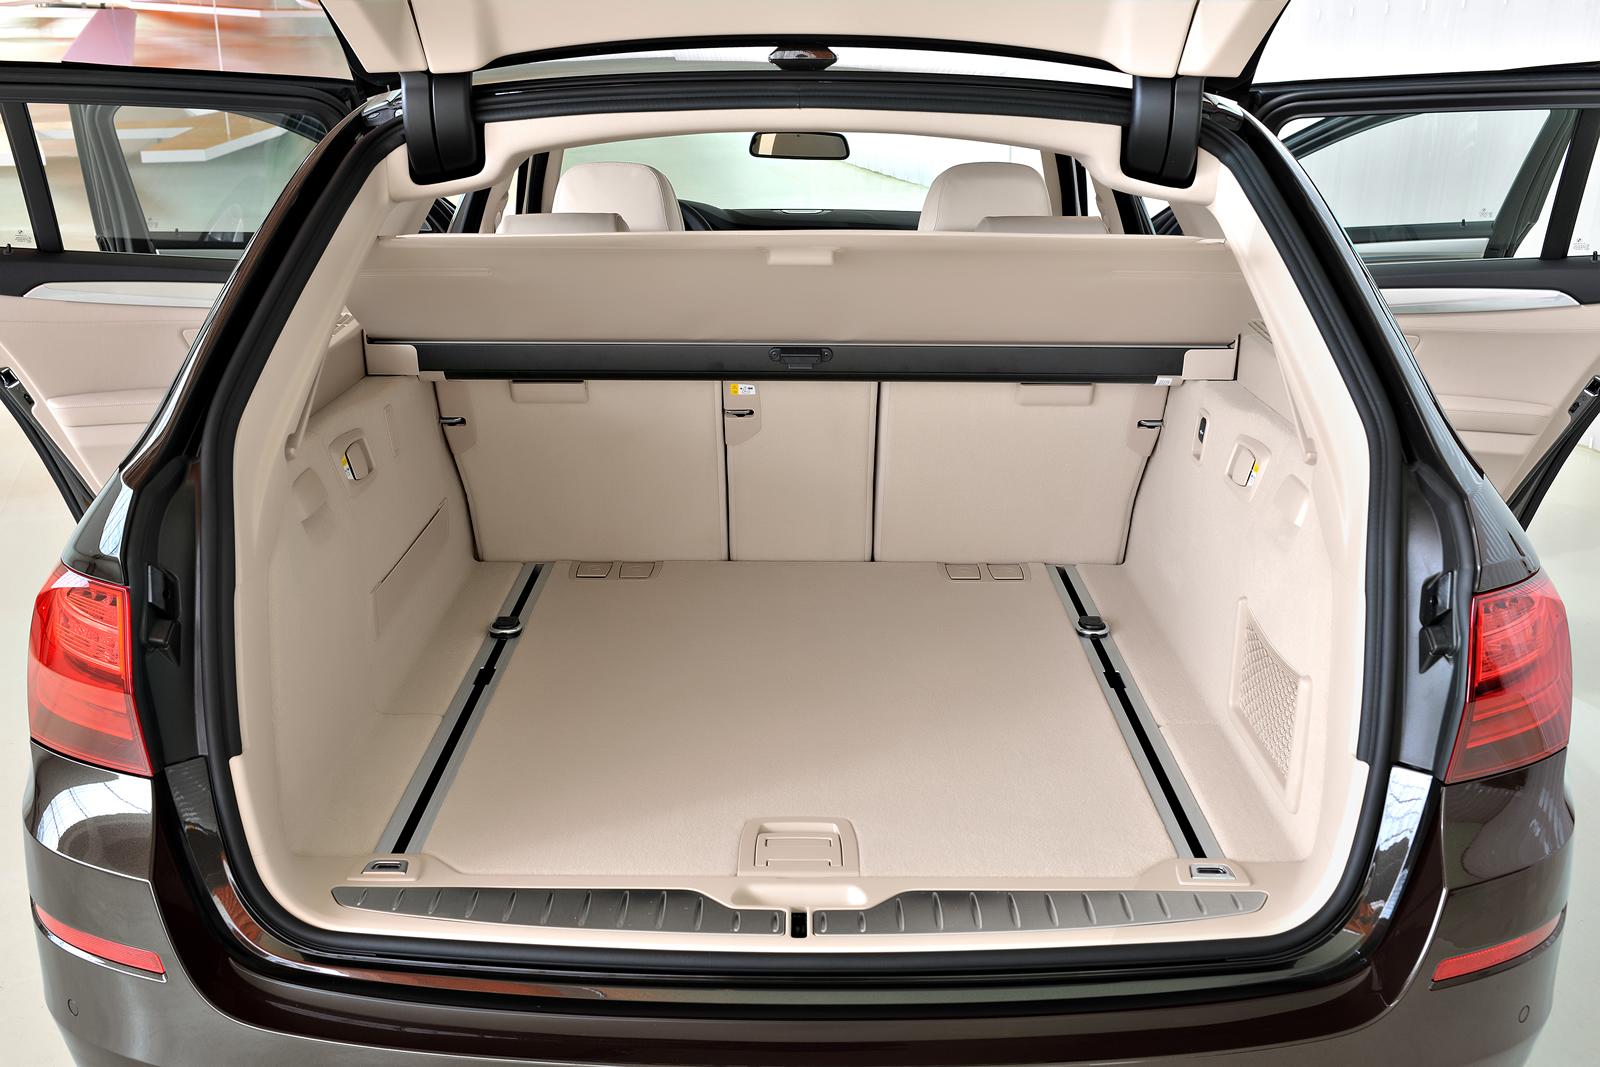 BMW 5 Touring 2014 - багажное отделение